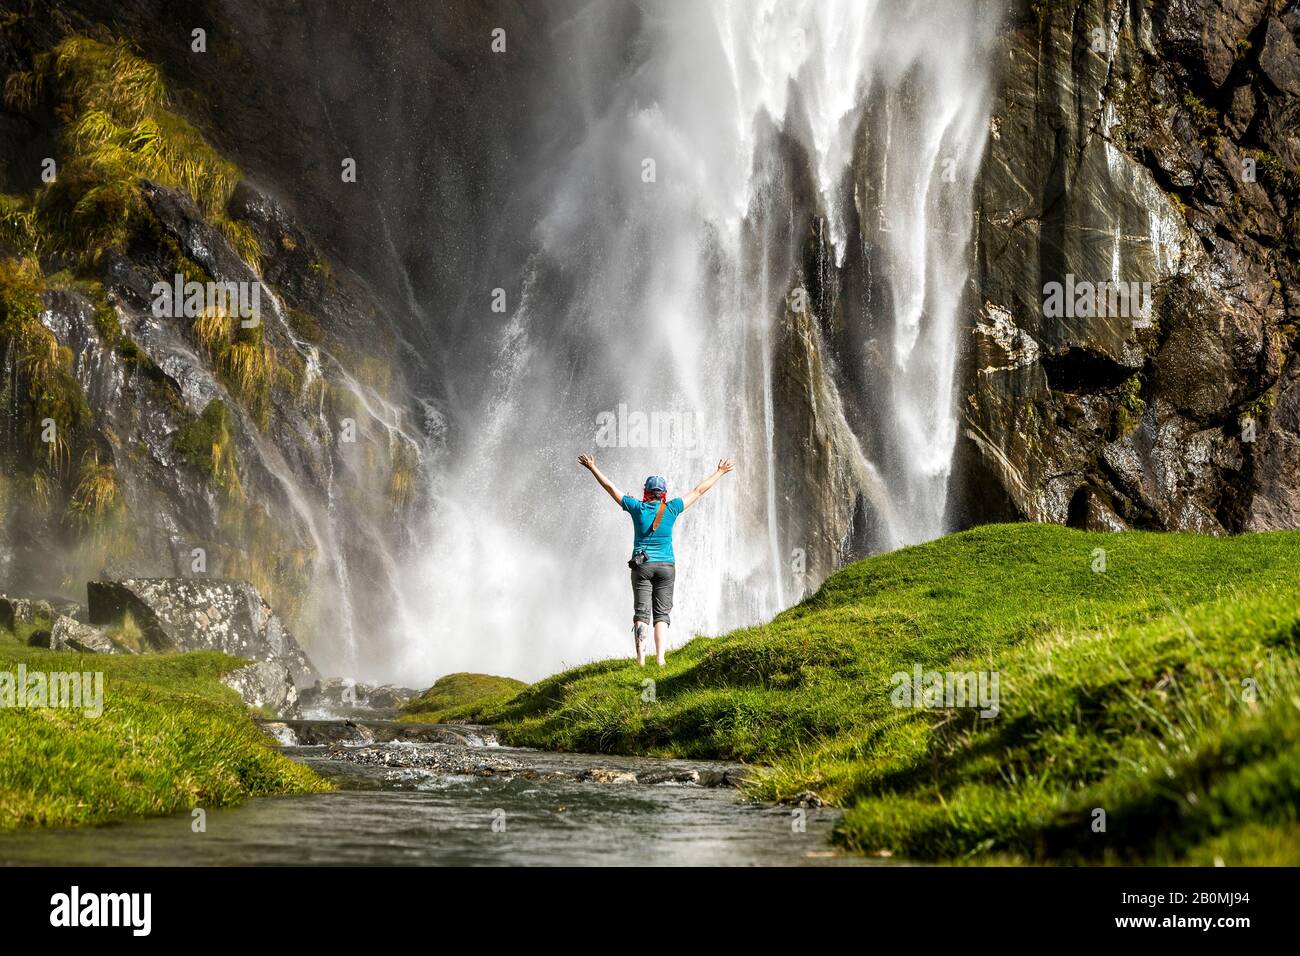 Figure debout devant un jet en cascade, dans un paysage de nature verte Banque D'Images